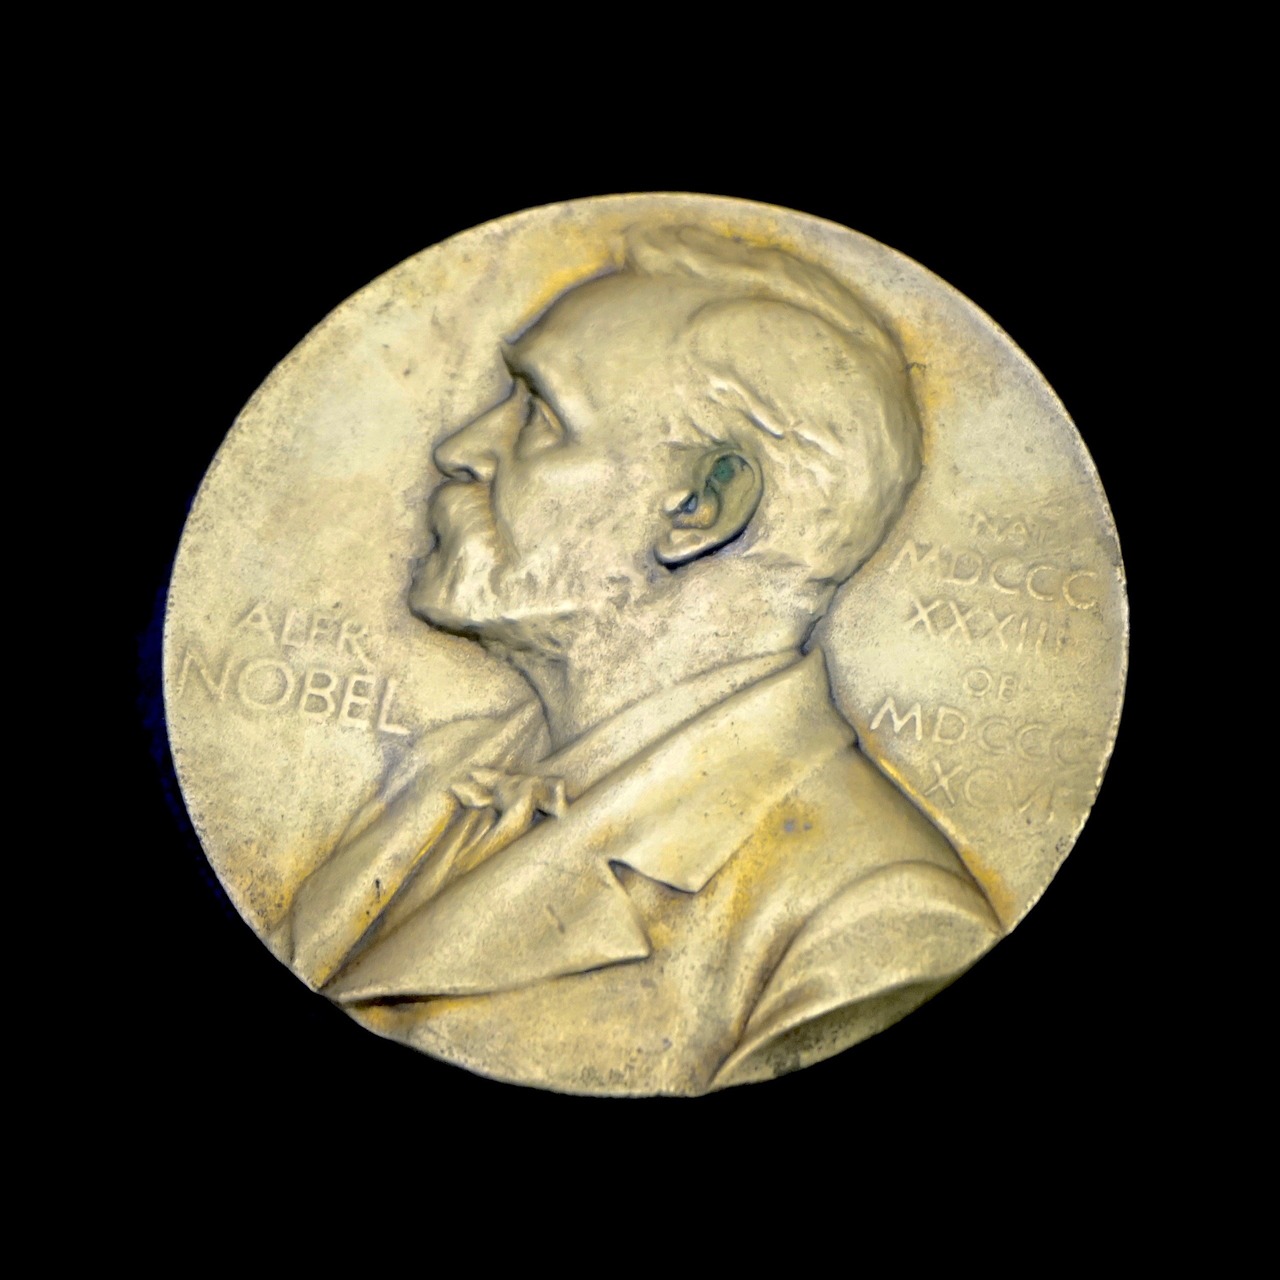 Nobel Prize in Medicine 2023